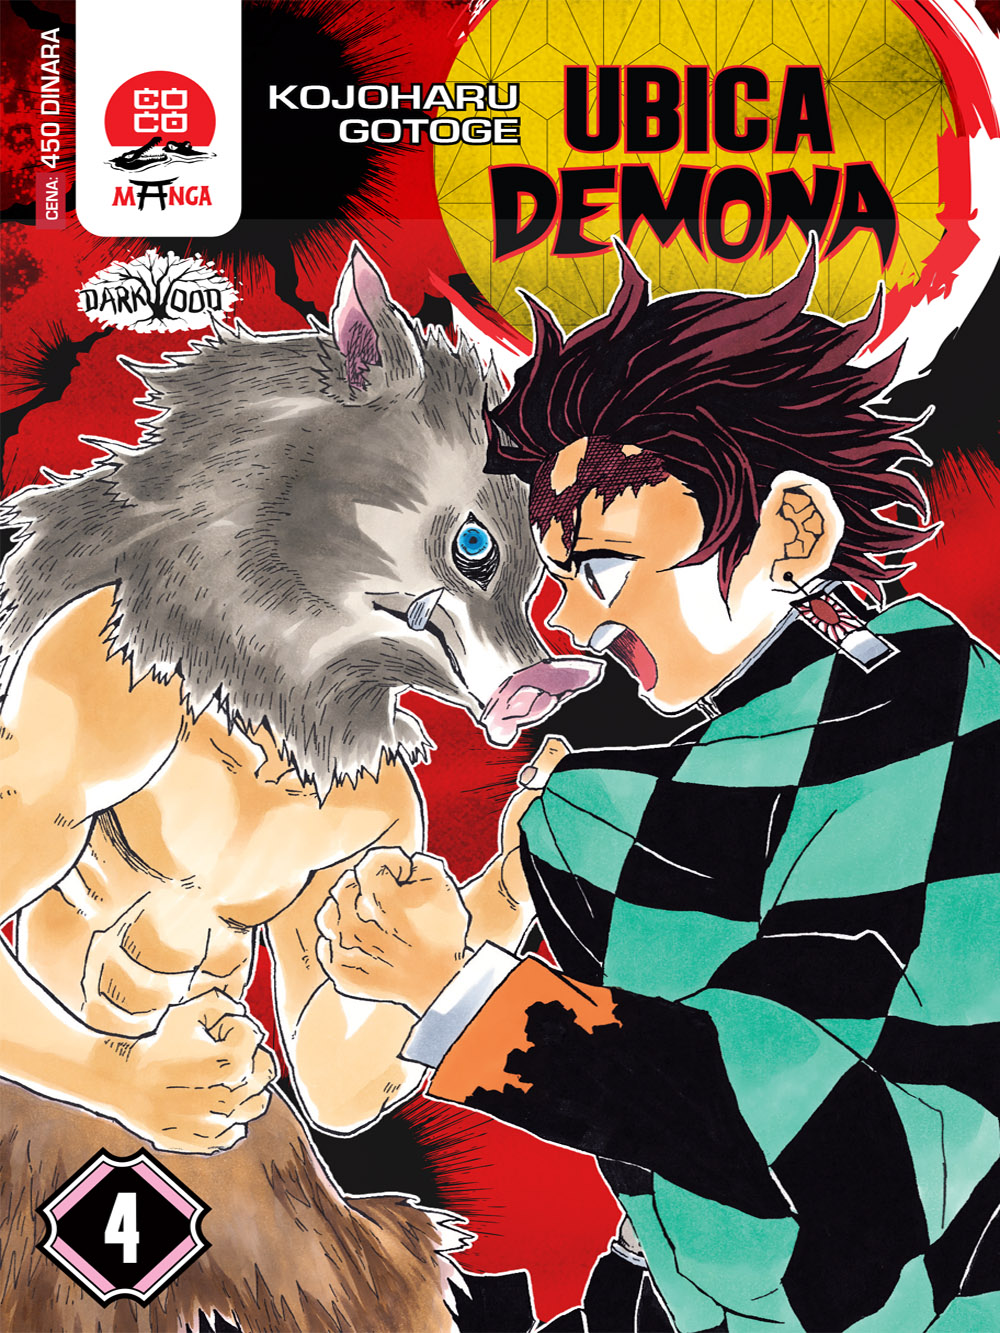 Manga Strip Demon Slayer - Ubica demona - 4 